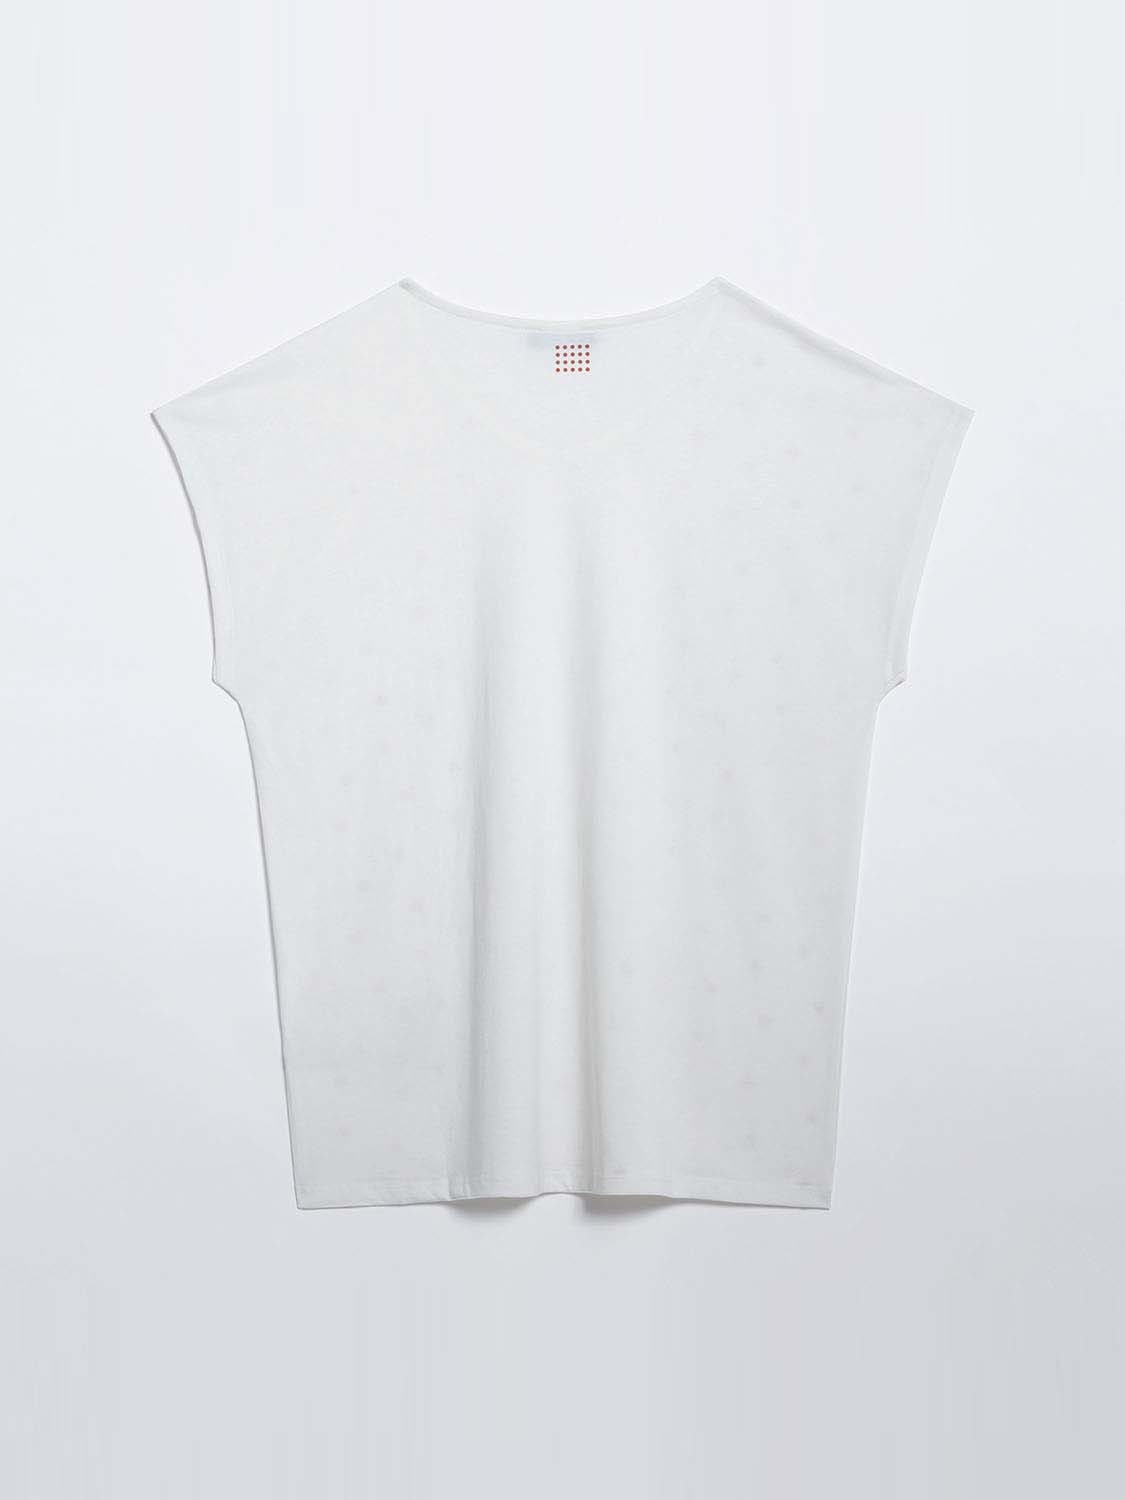 Tee shirt Femme Motif Coton Biologique Blanc